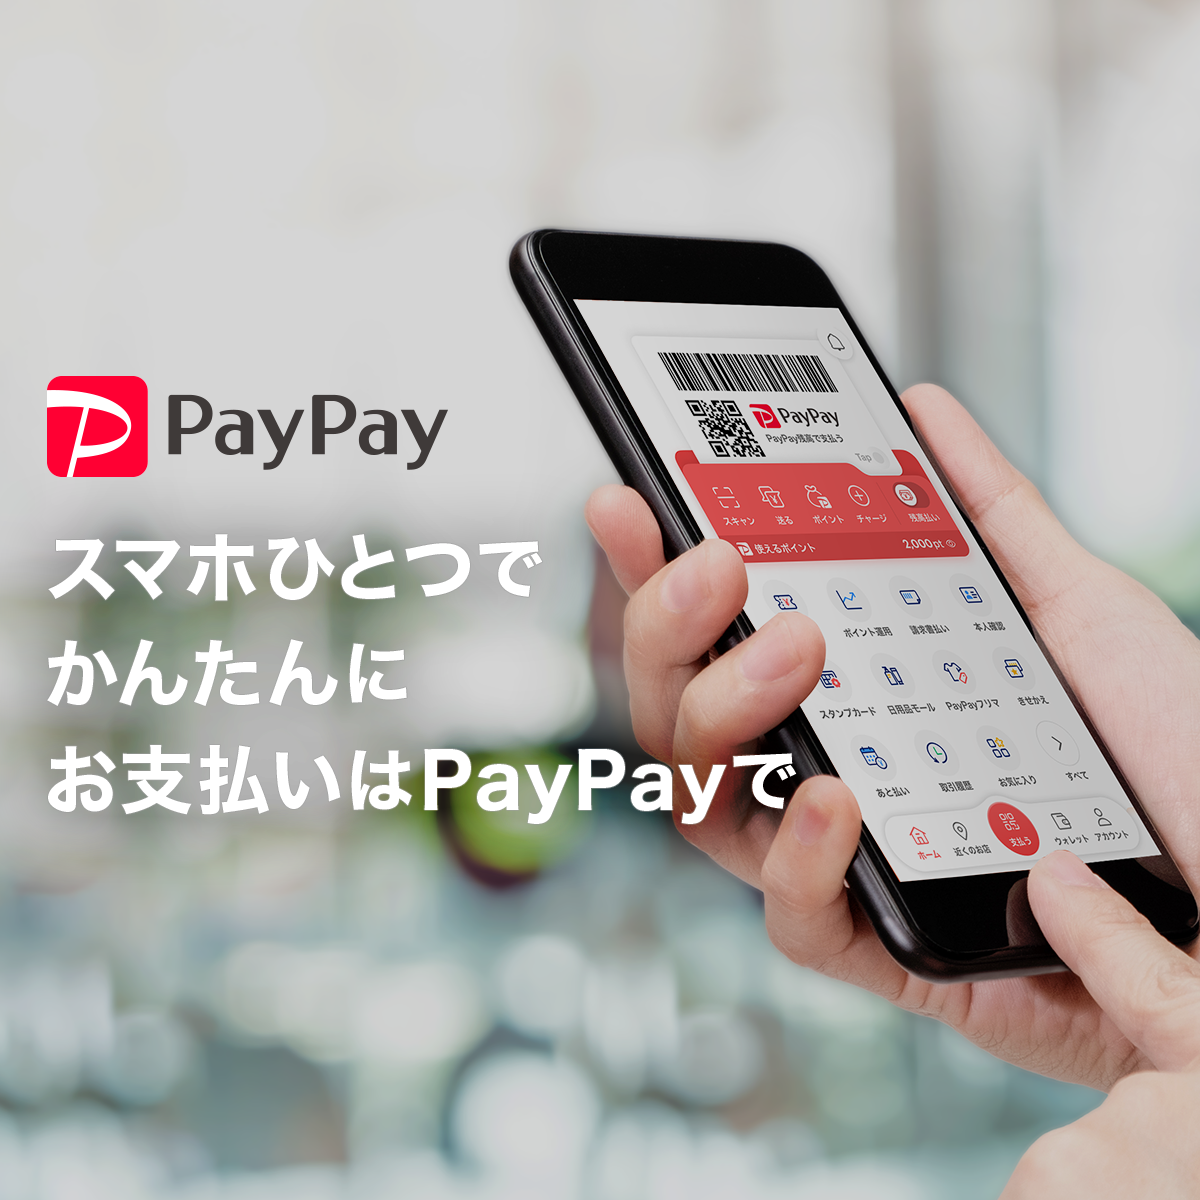 PayPay（ペイペイ）- QRコードで支払うキャッシュレス決済のスマホアプリ